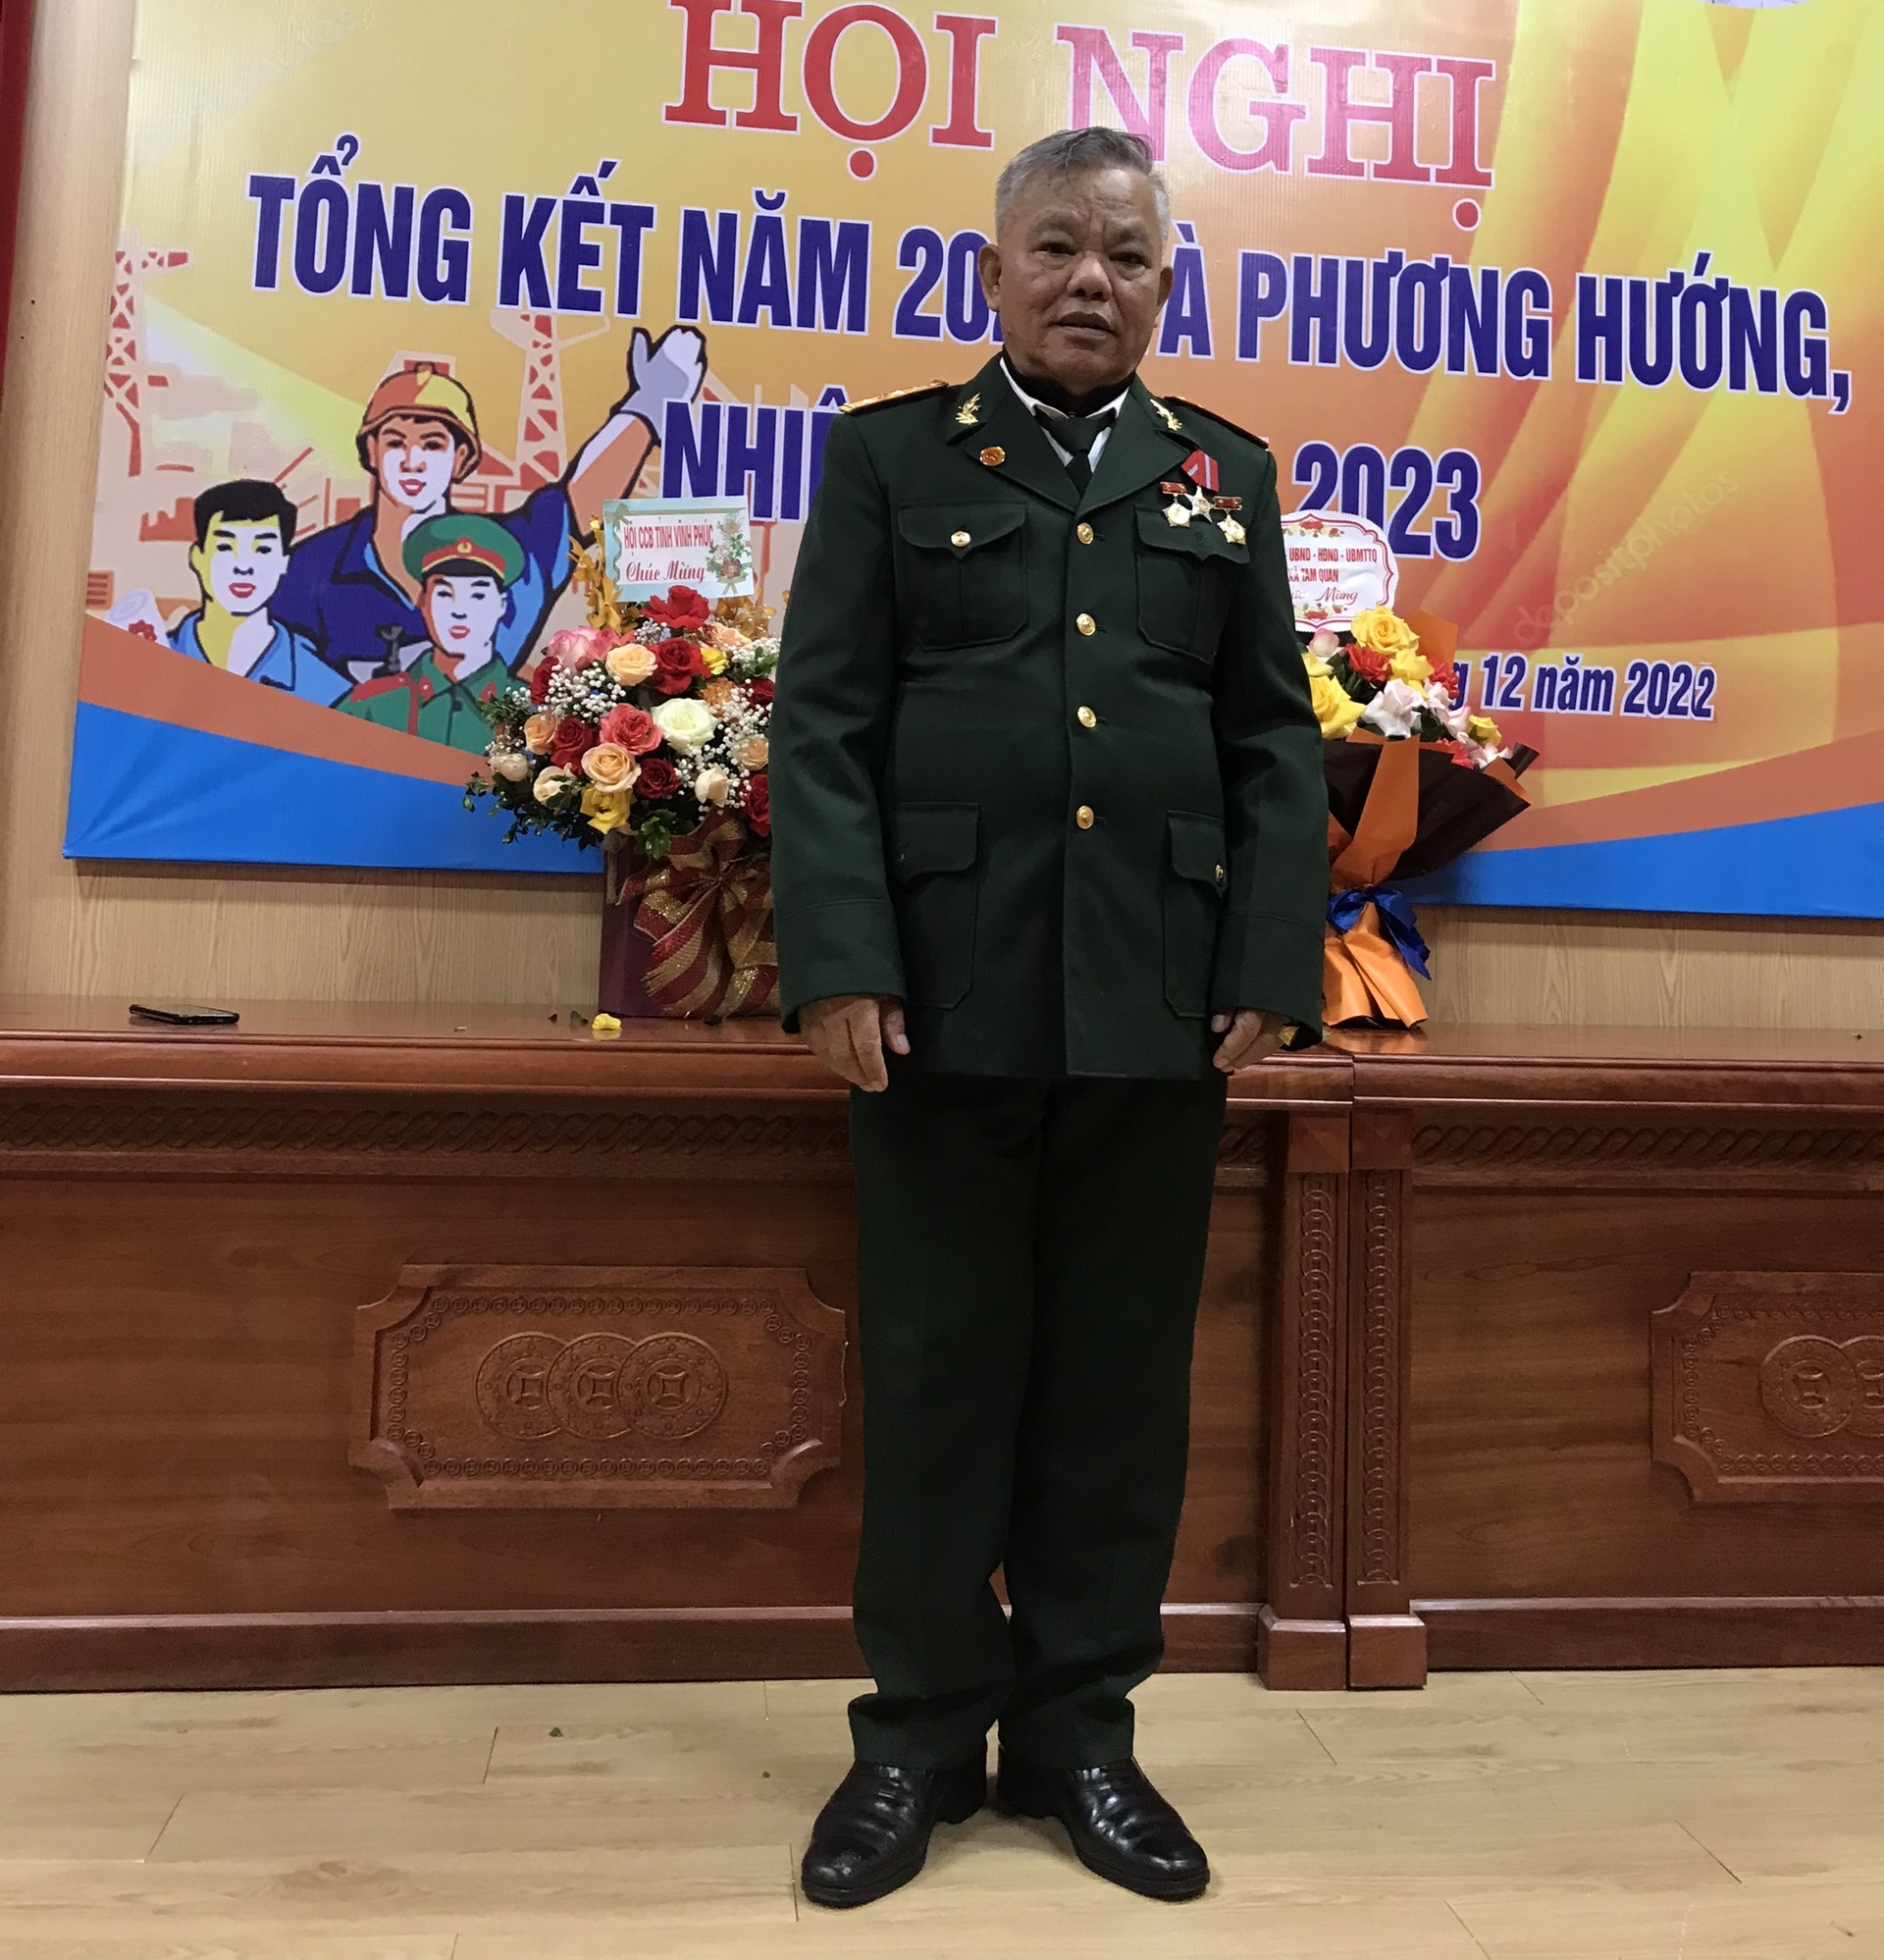 Cựu chiến binh Trần Oai Bốn hiện đang đảm nhận nhiều trọng trách ở địa phương. Ảnh: NVCC